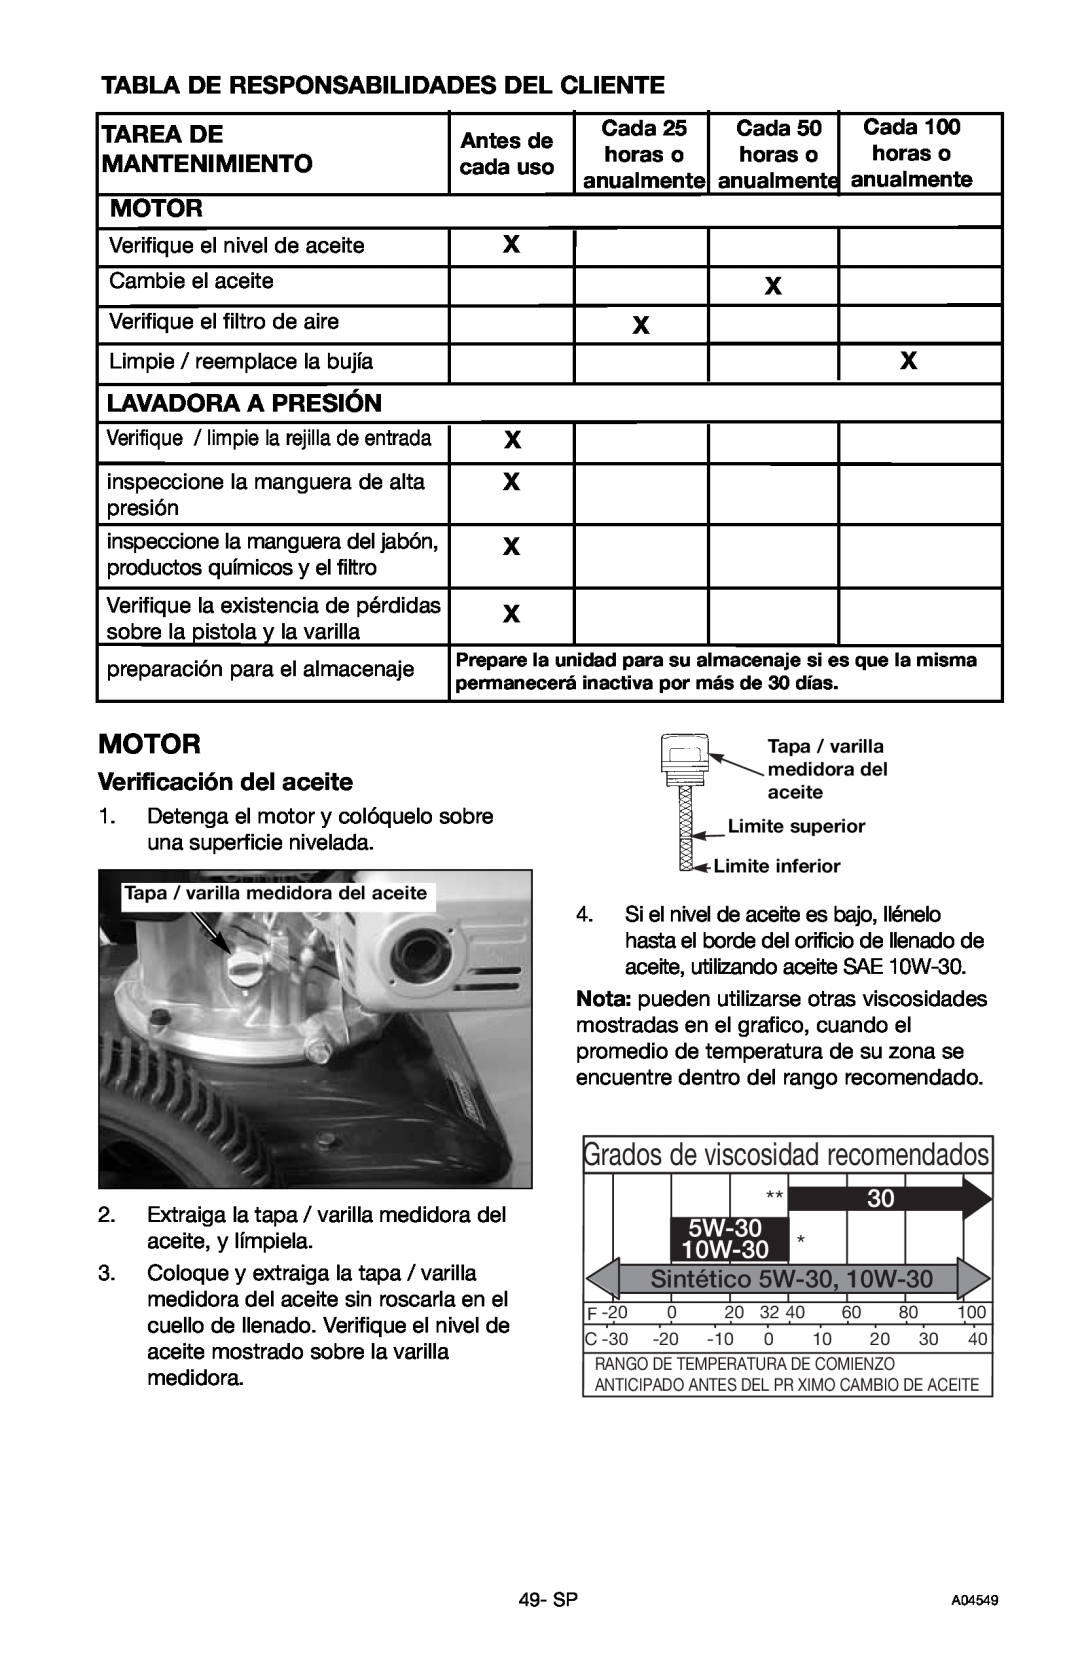 Craftsman 919.769063 owner manual Grados de viscosidad recomendados, Motor, Sintético 5W-30, 10W-30 